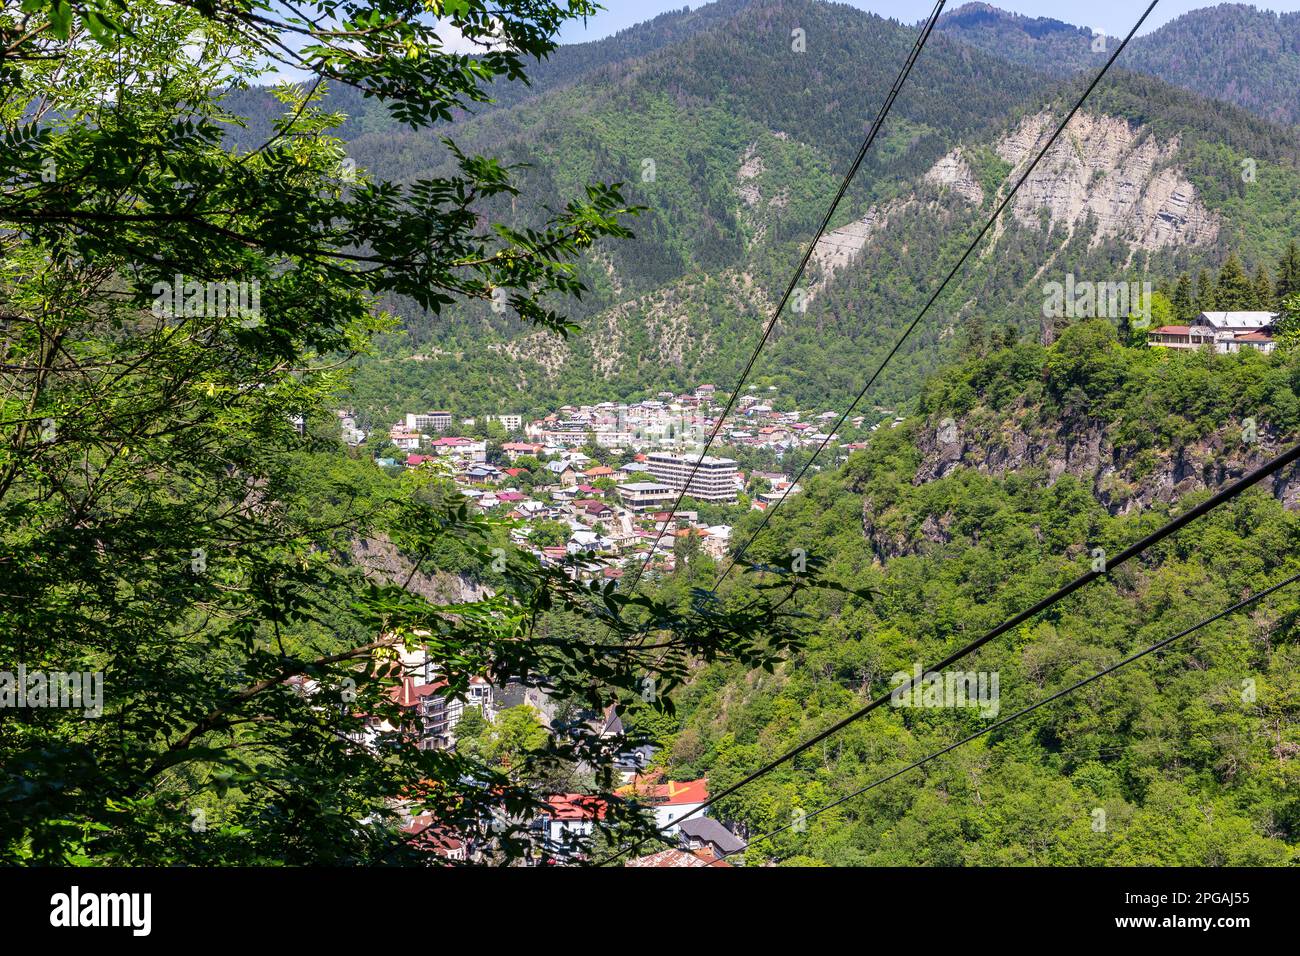 Ville de Borjomi vue aérienne vue depuis le téléphérique au-dessus de la ville, ville de villégiature dans la gorge verte de Borjomi, Parc national de Borjomi-Kharaguli, Caucase, Géorgie. Banque D'Images